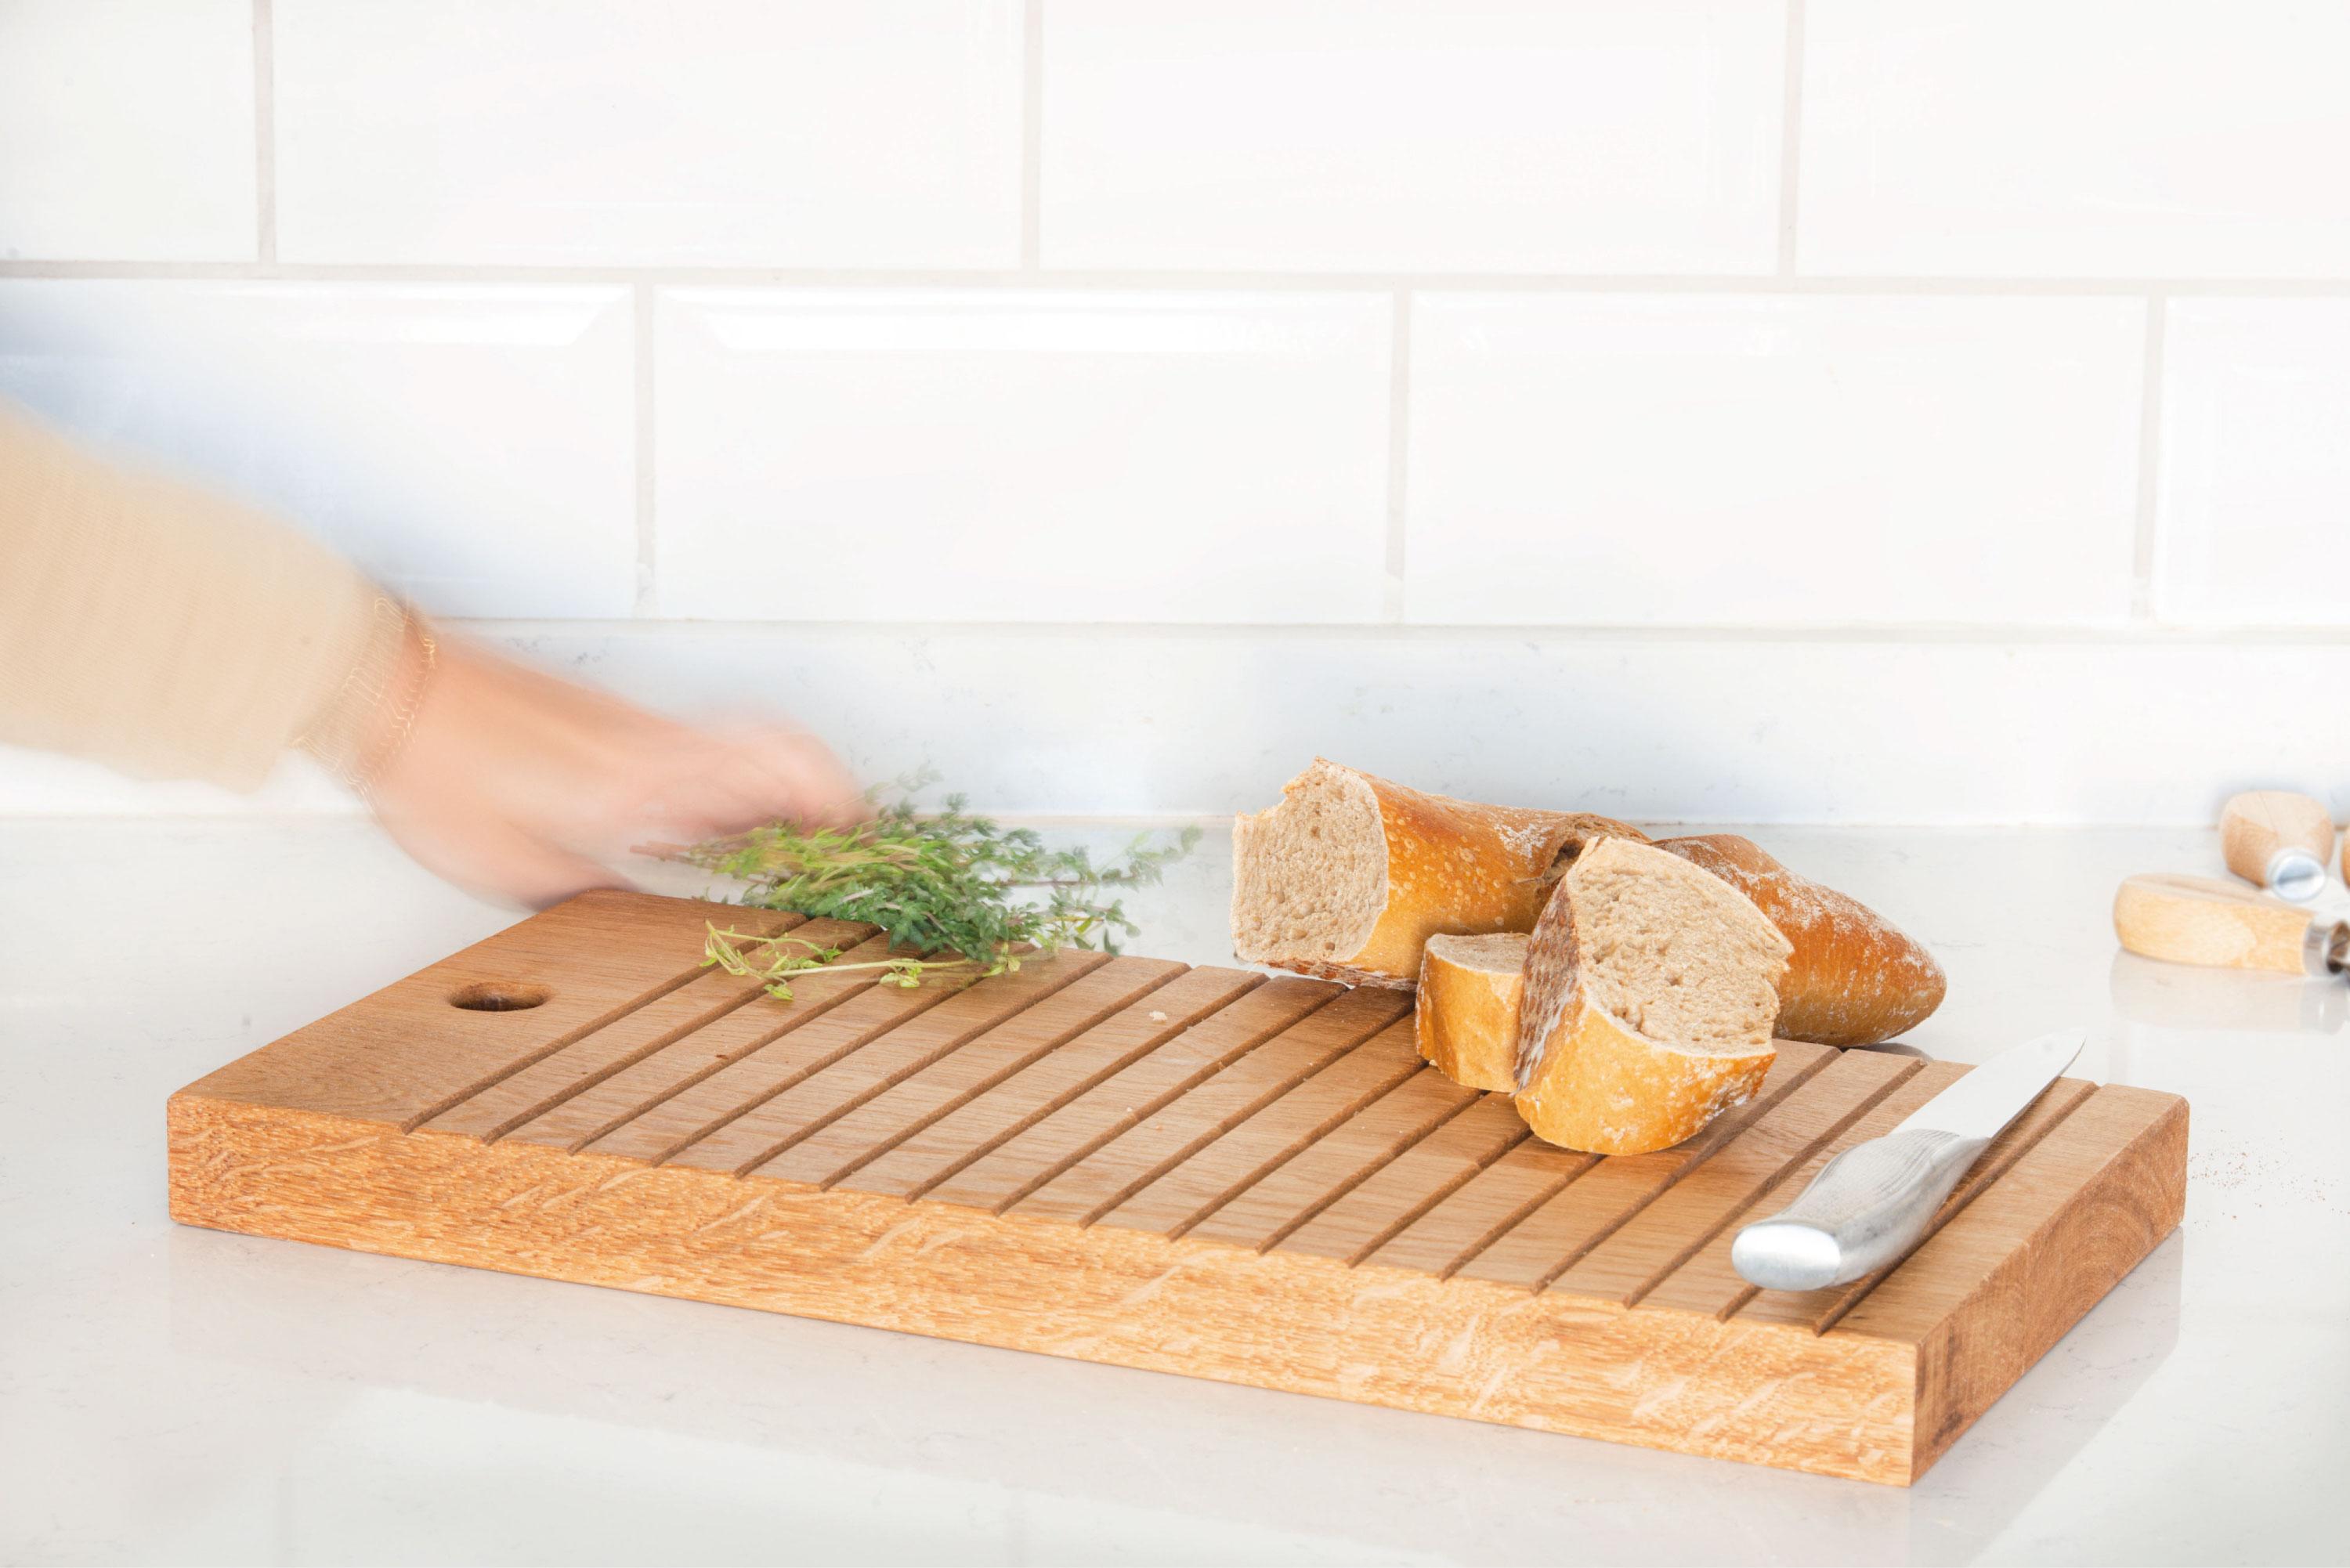 Das Block-Schneidebrett ist ein kulinarisches Werkzeug, das auf Präzision und Funktionalität ausgerichtet ist. Seine Oberfläche ist mit sorgfältig geätzten Linien verziert, die zum Schneiden von Lebensmitteln unterschiedlicher Größe dienen. Egal, ob